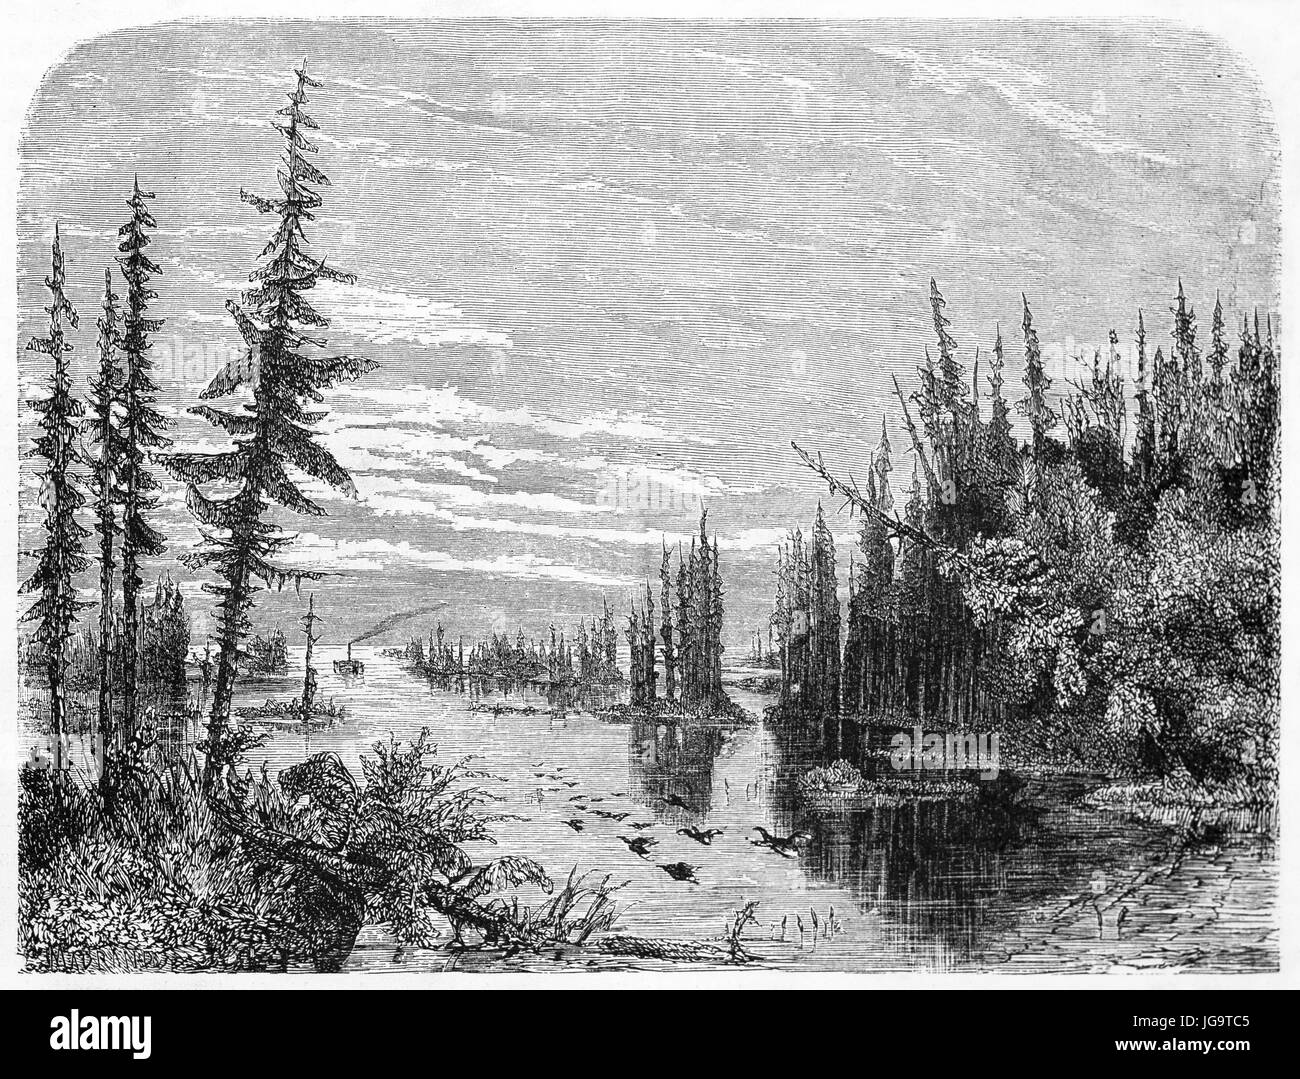 Paysage humide avec eau plate et végétation dans mille îles du lac Ontario, en Amérique du Nord. Art de style gravure de tons gris antique par Huet 1861 Banque D'Images